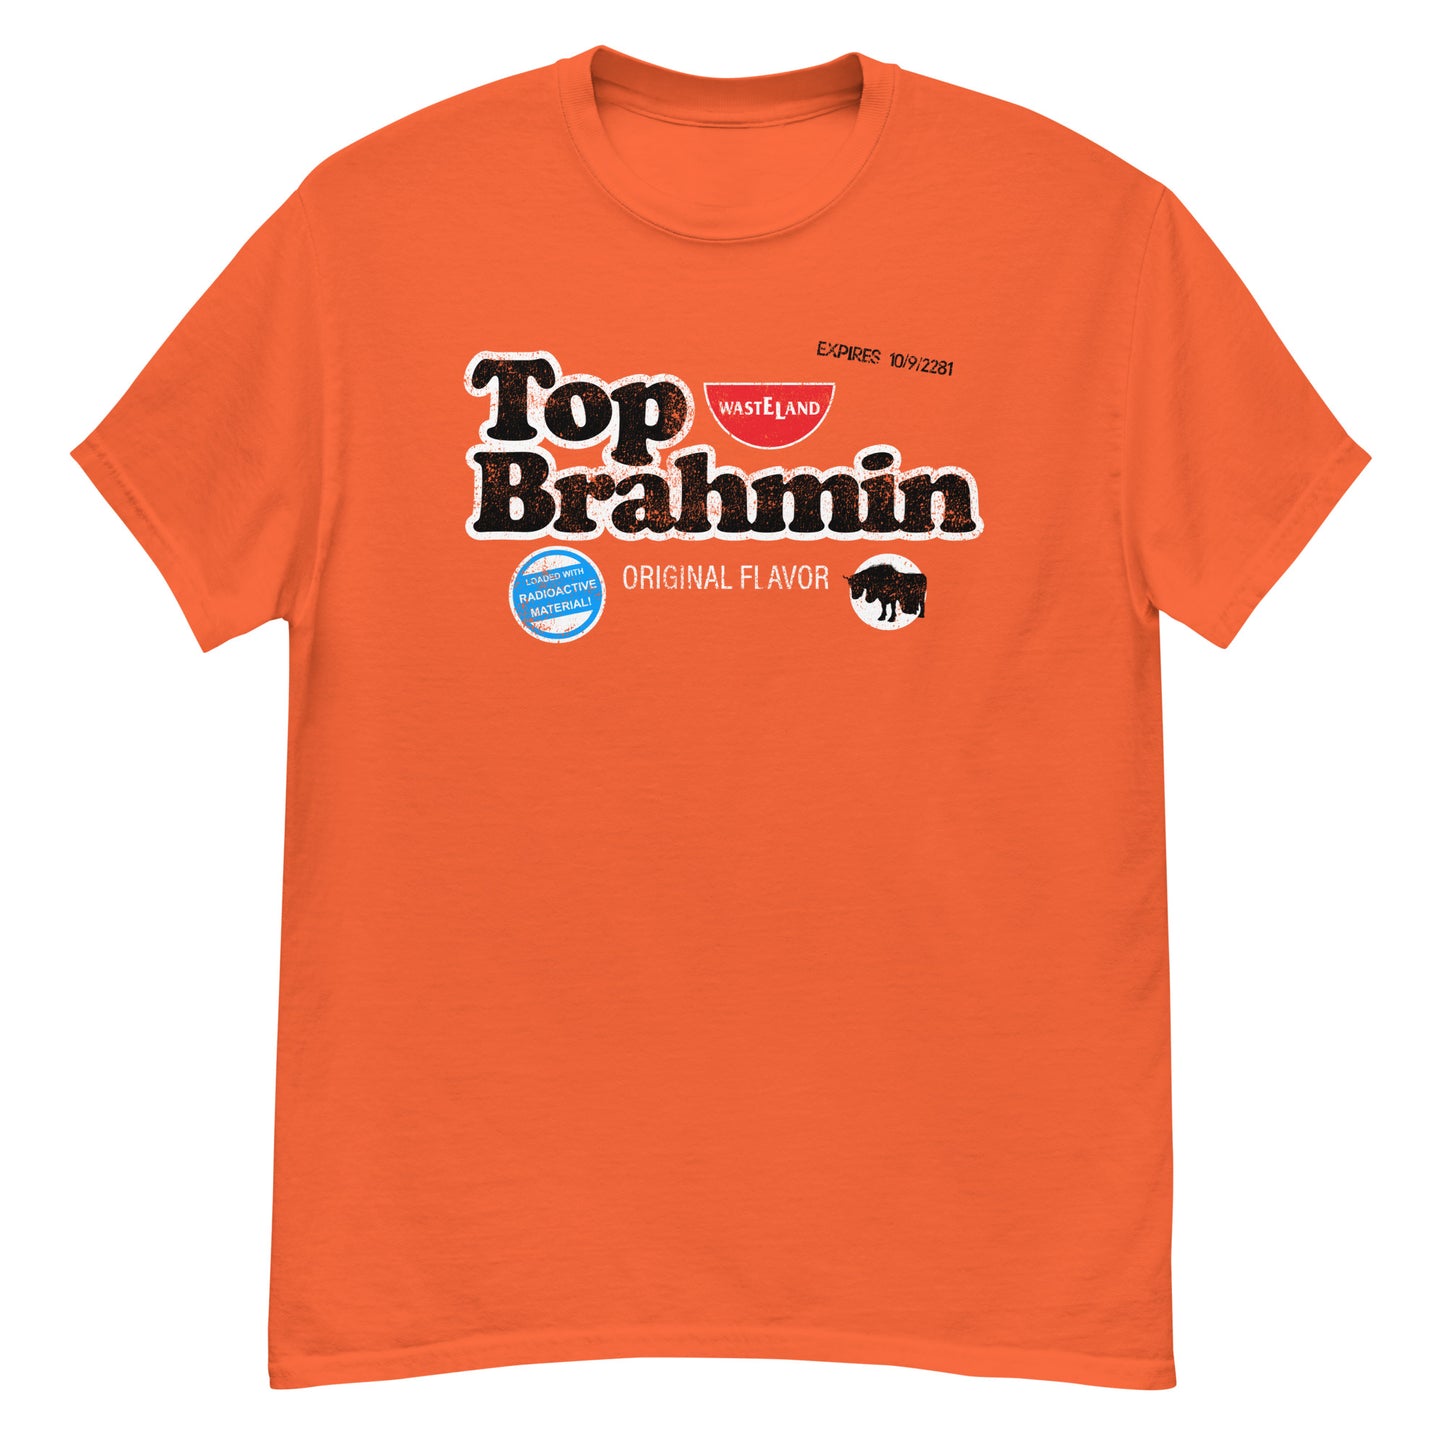 Wasteland Dining Top Brahmin t-shirt